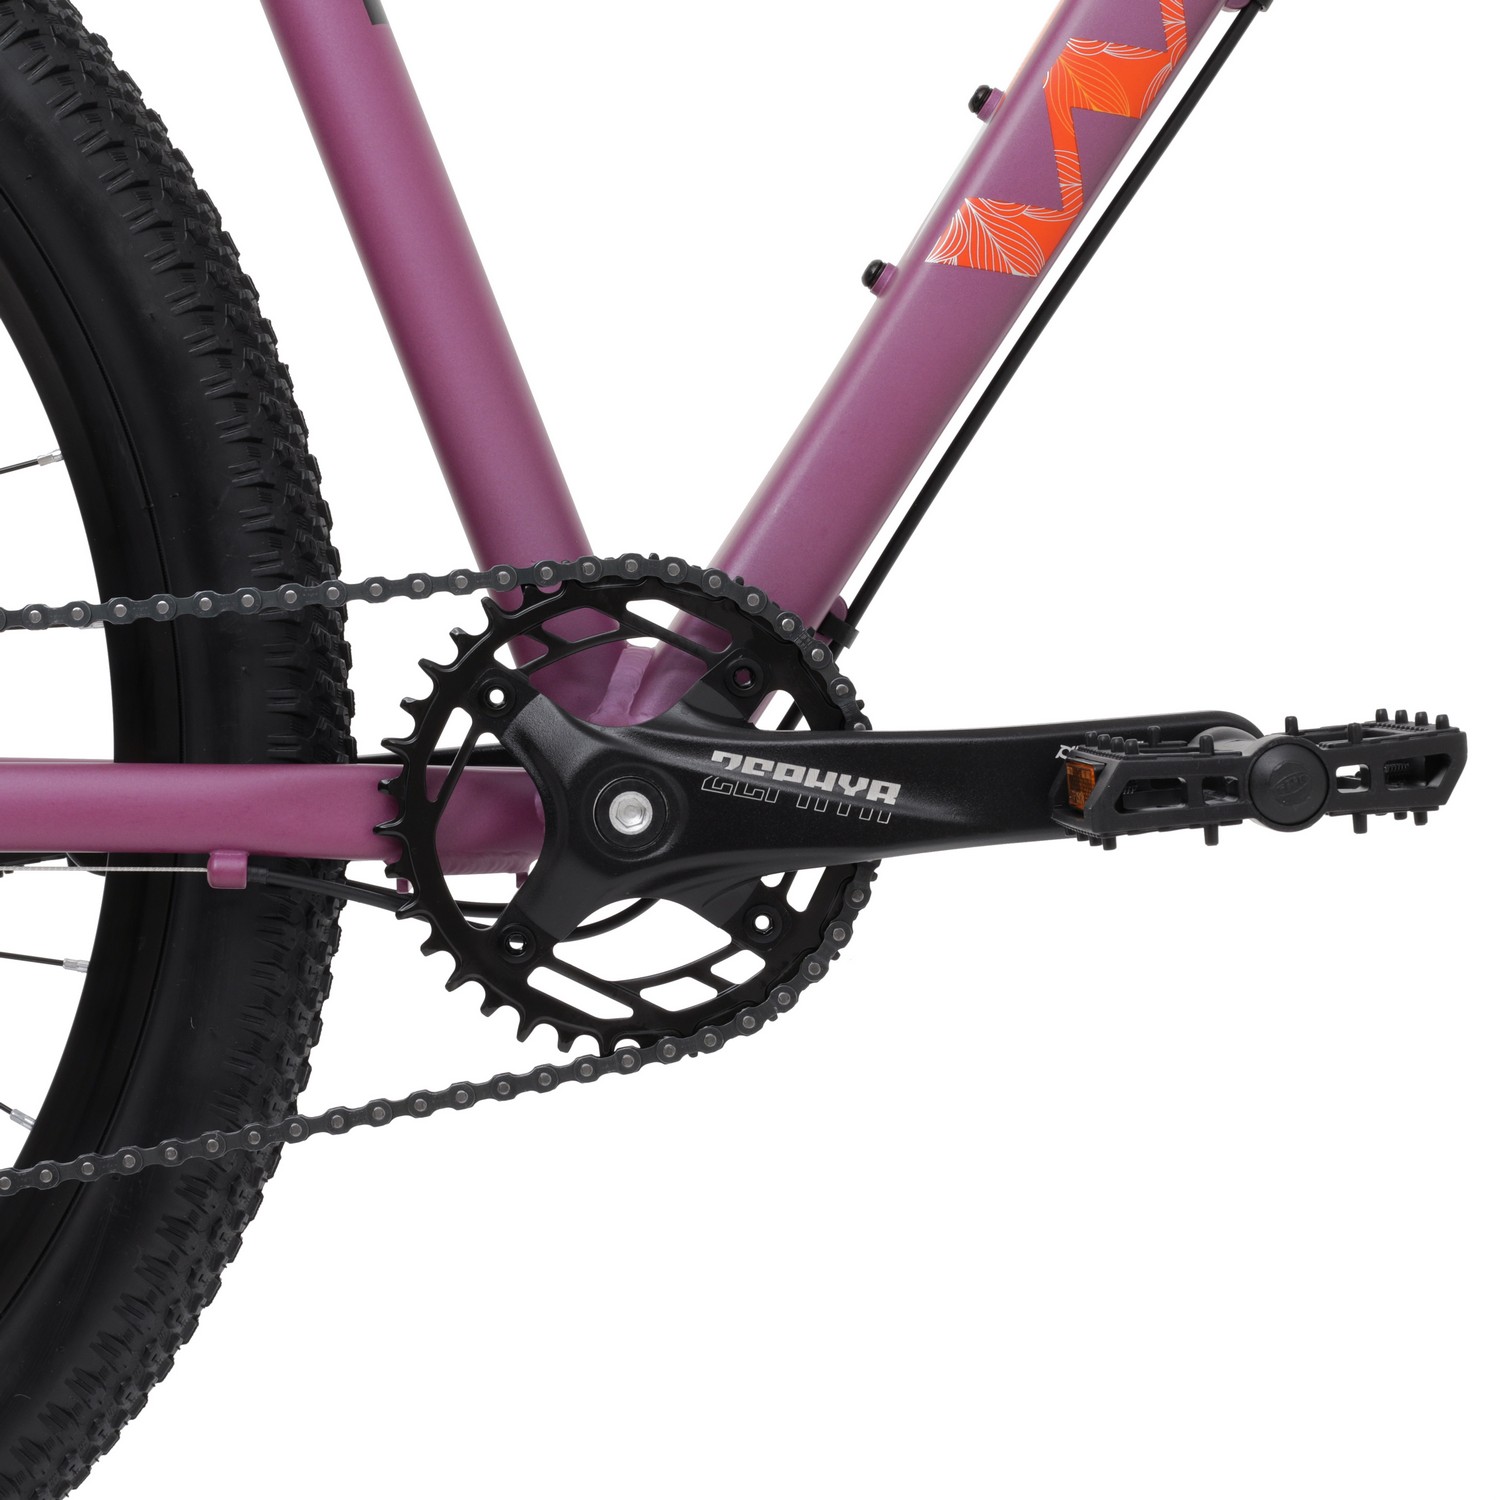 фото Женский велосипед welt edelweiss 2.0 hd 27, год 2023, цвет фиолетовый, ростовка 16